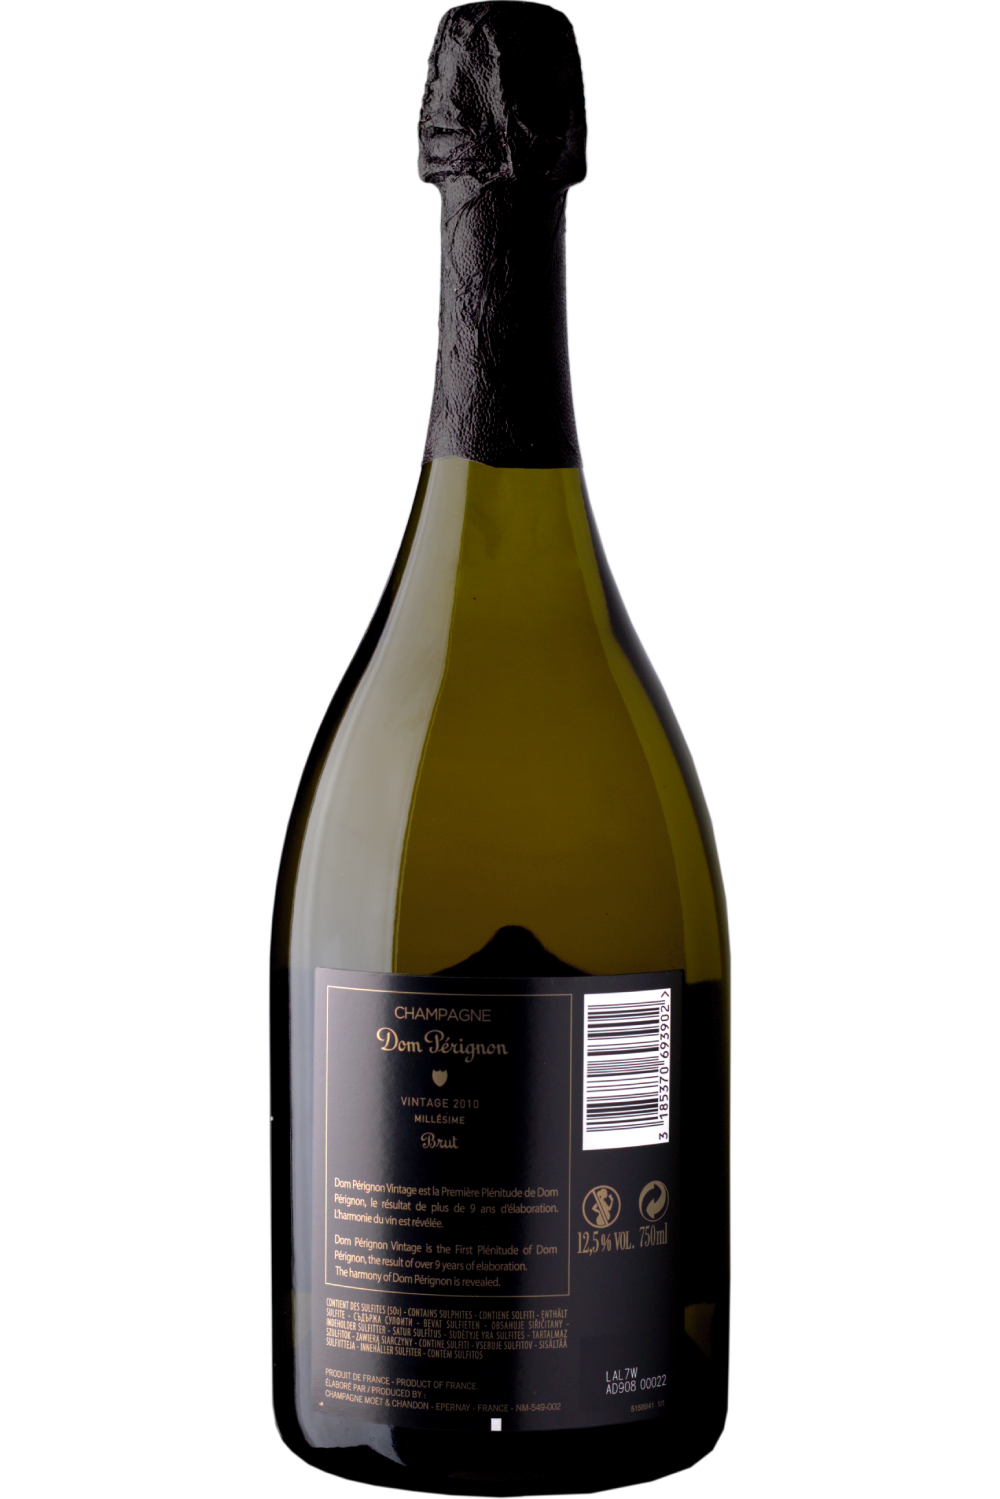 Dom Perignon Brut Champagne, France (Vintage Varies) - 750 ml bottle